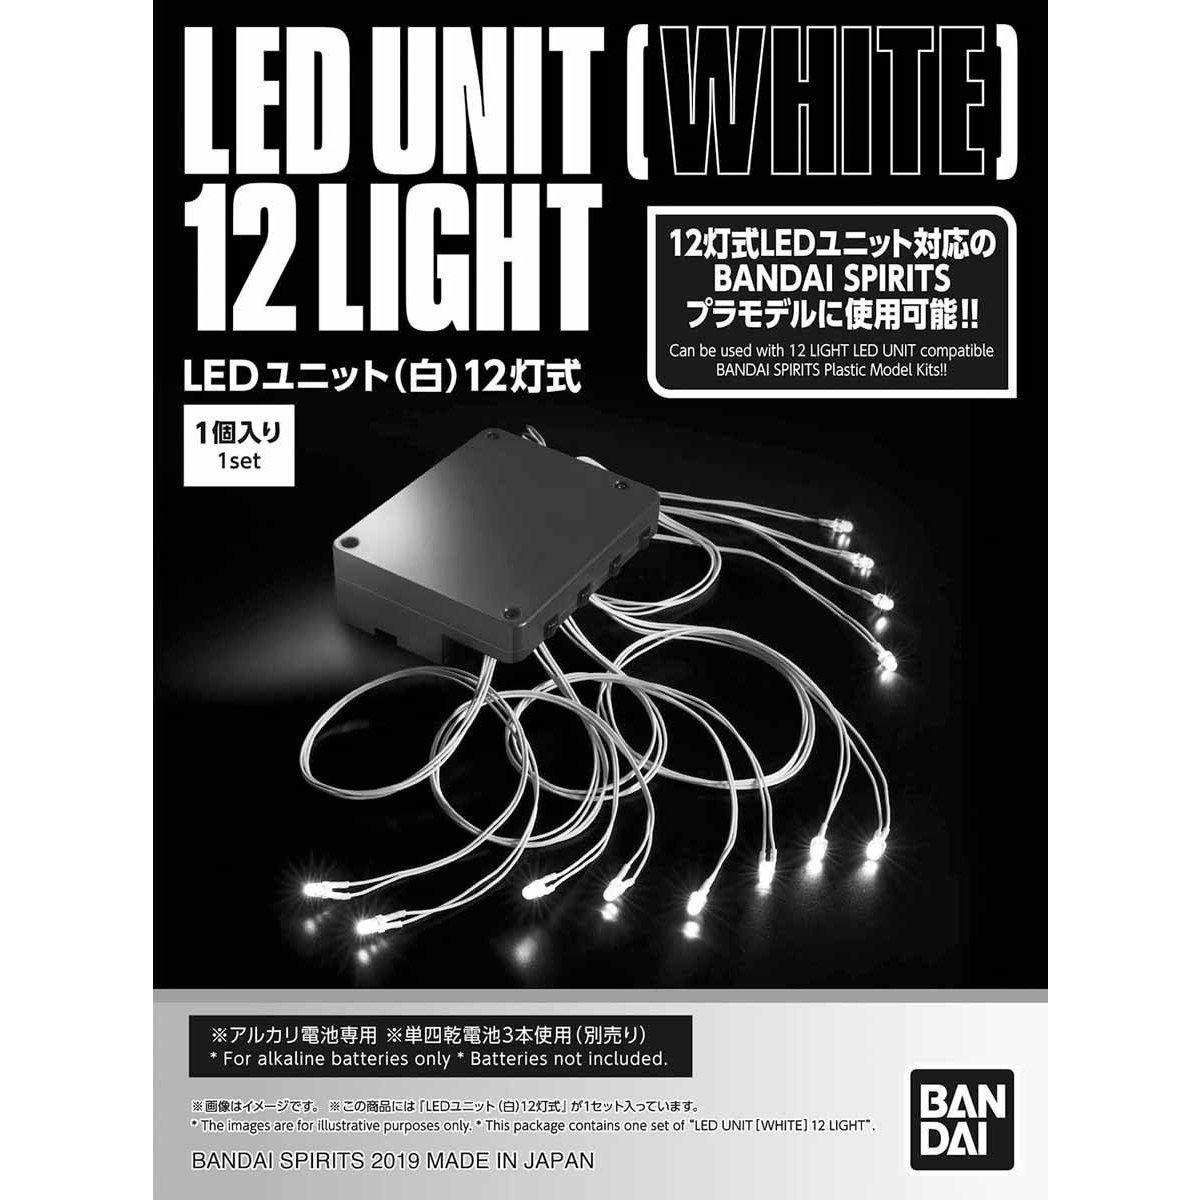 LEDユニット (白) 12灯式 03